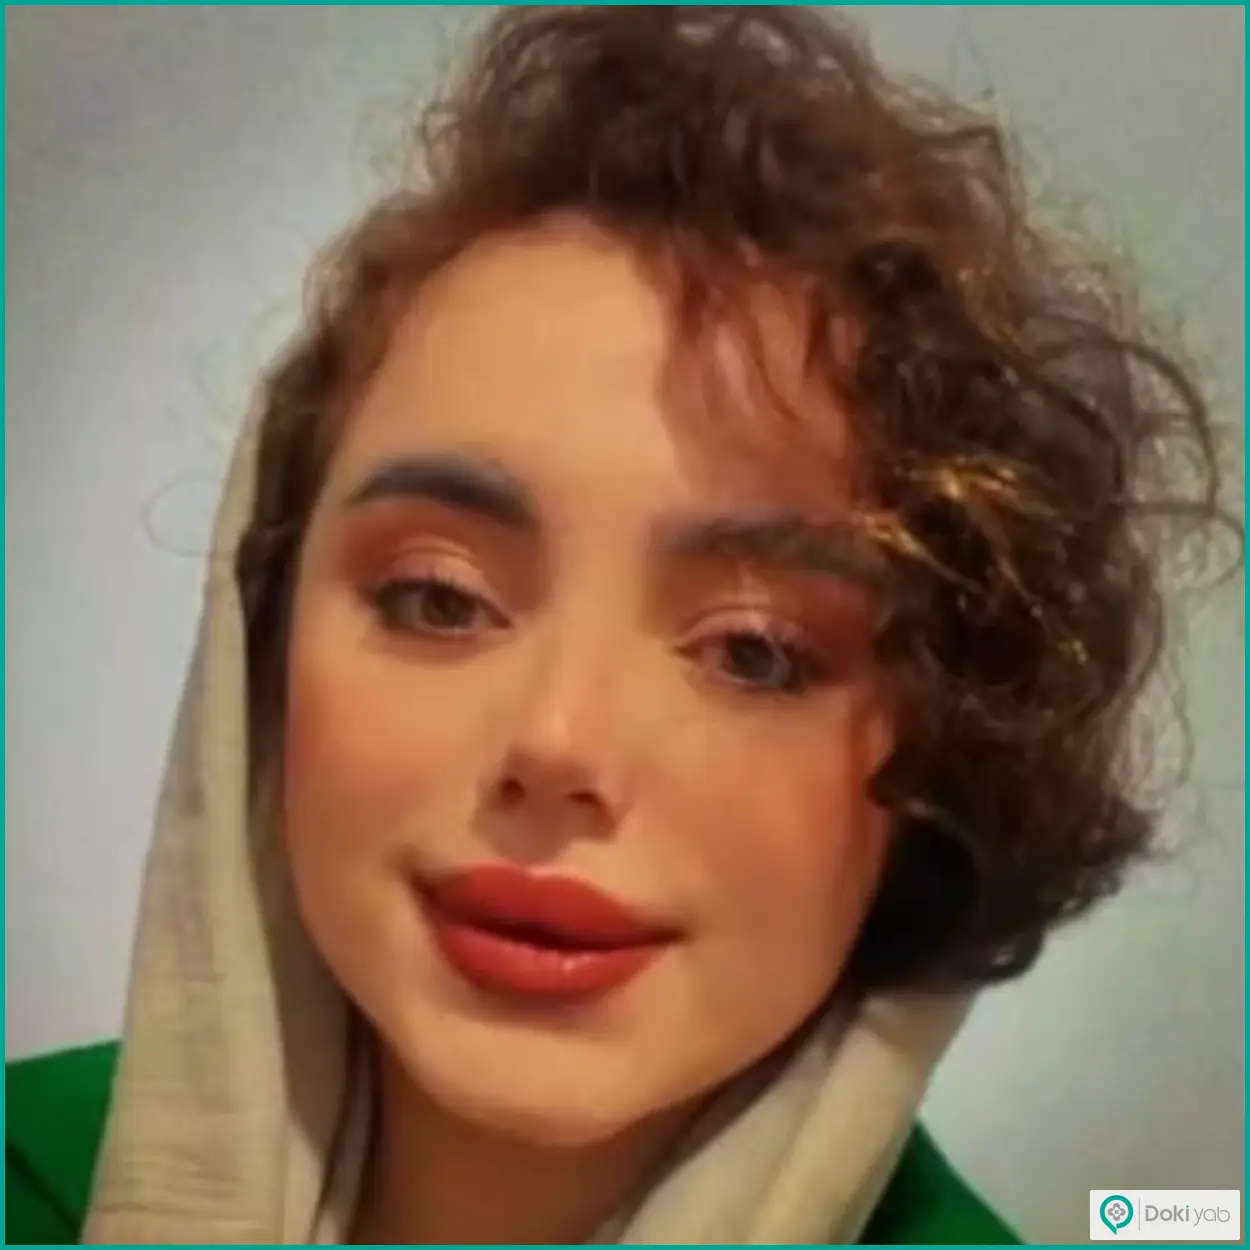 نمونه عمل زیبایی بینی نیمه فانتزی دکتر خسرو خسروی جراح بینی شیراز